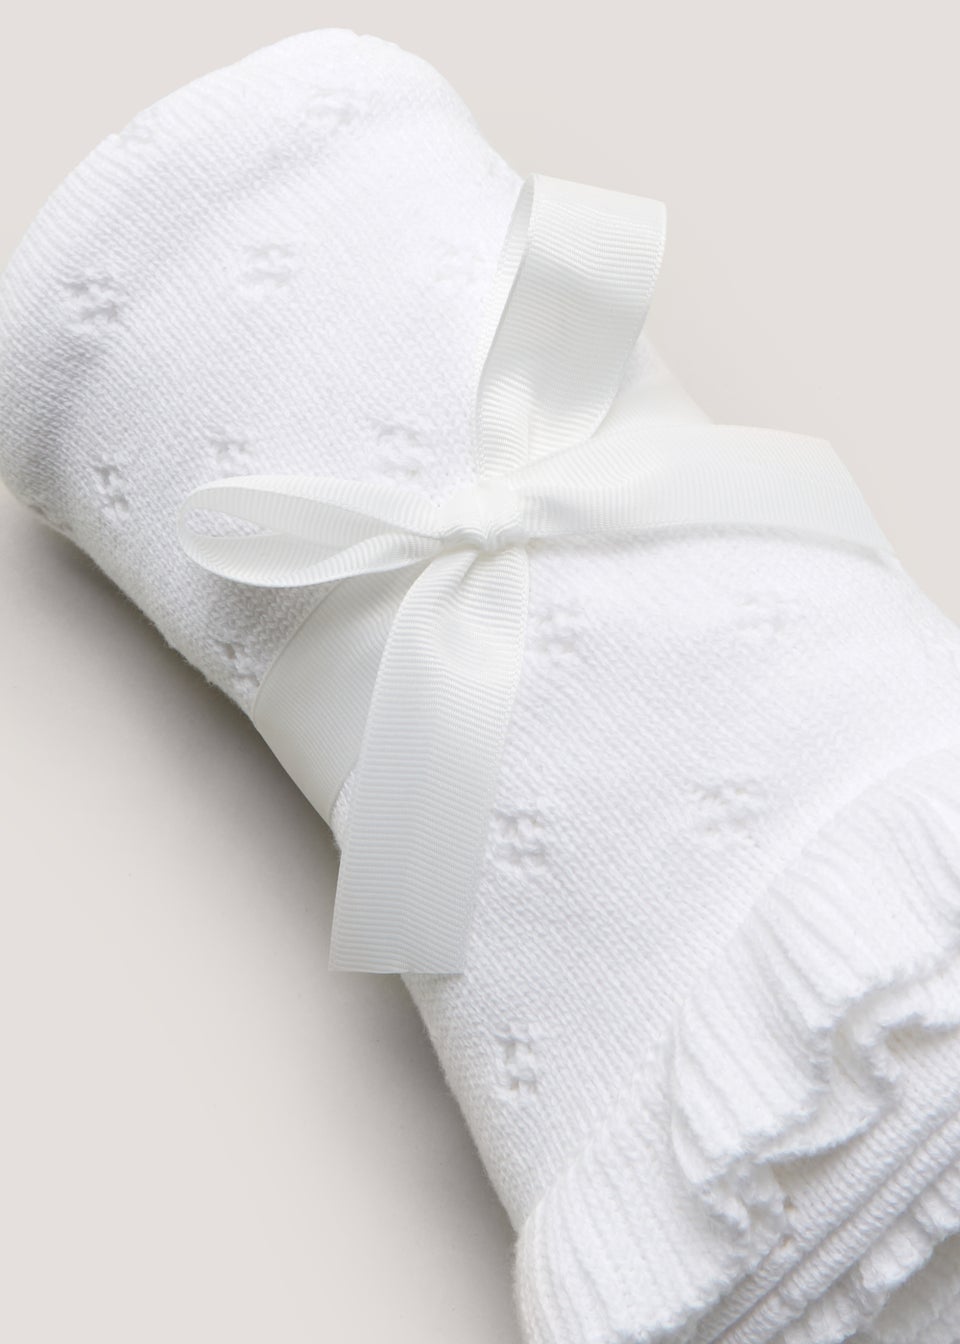 White Frill Edge Baby Blanket (90cm x 70cm)